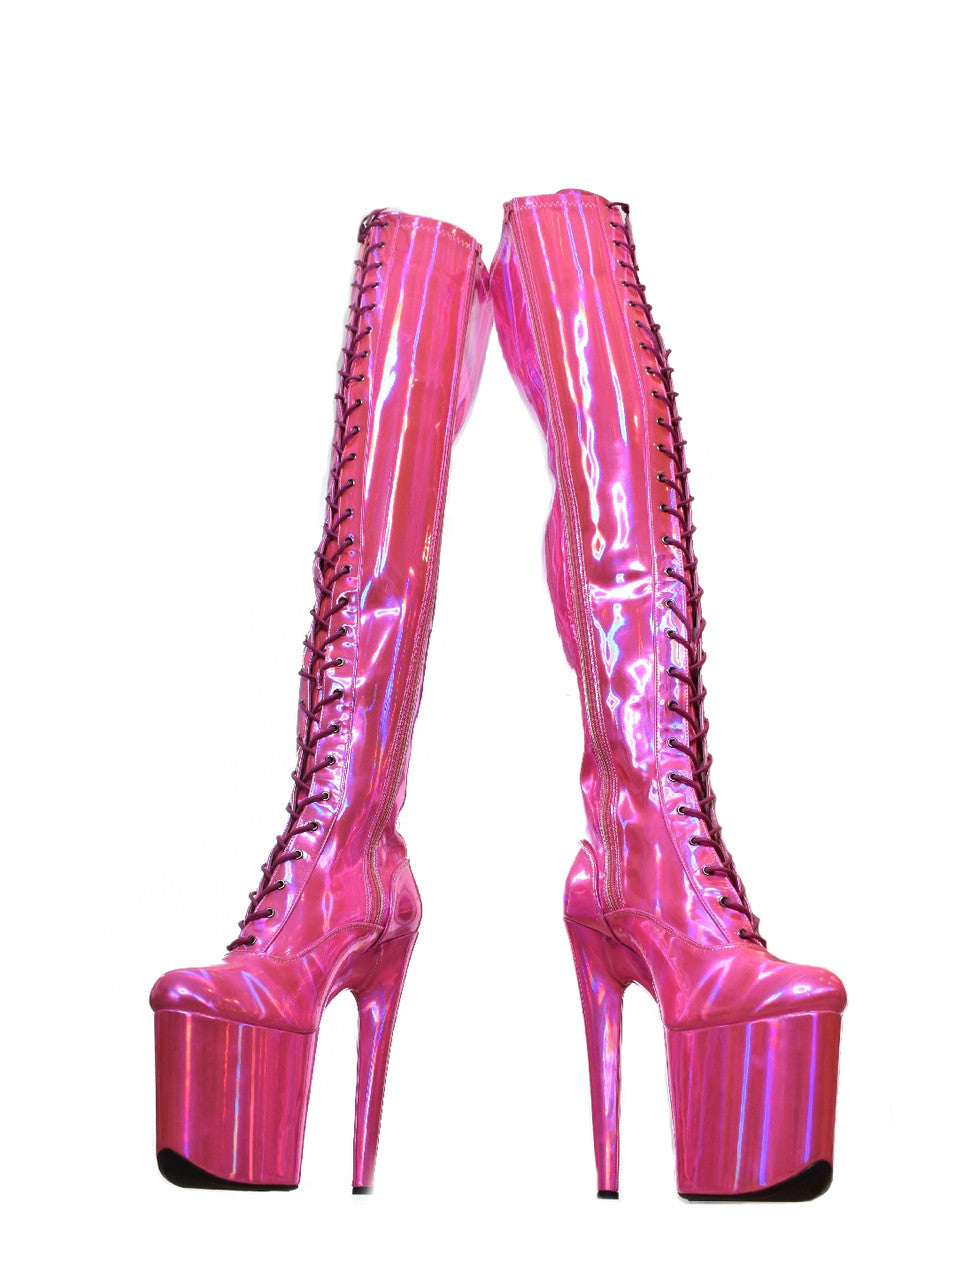 Barbz Pearlscent Pink Thigh High Platform Boots. 